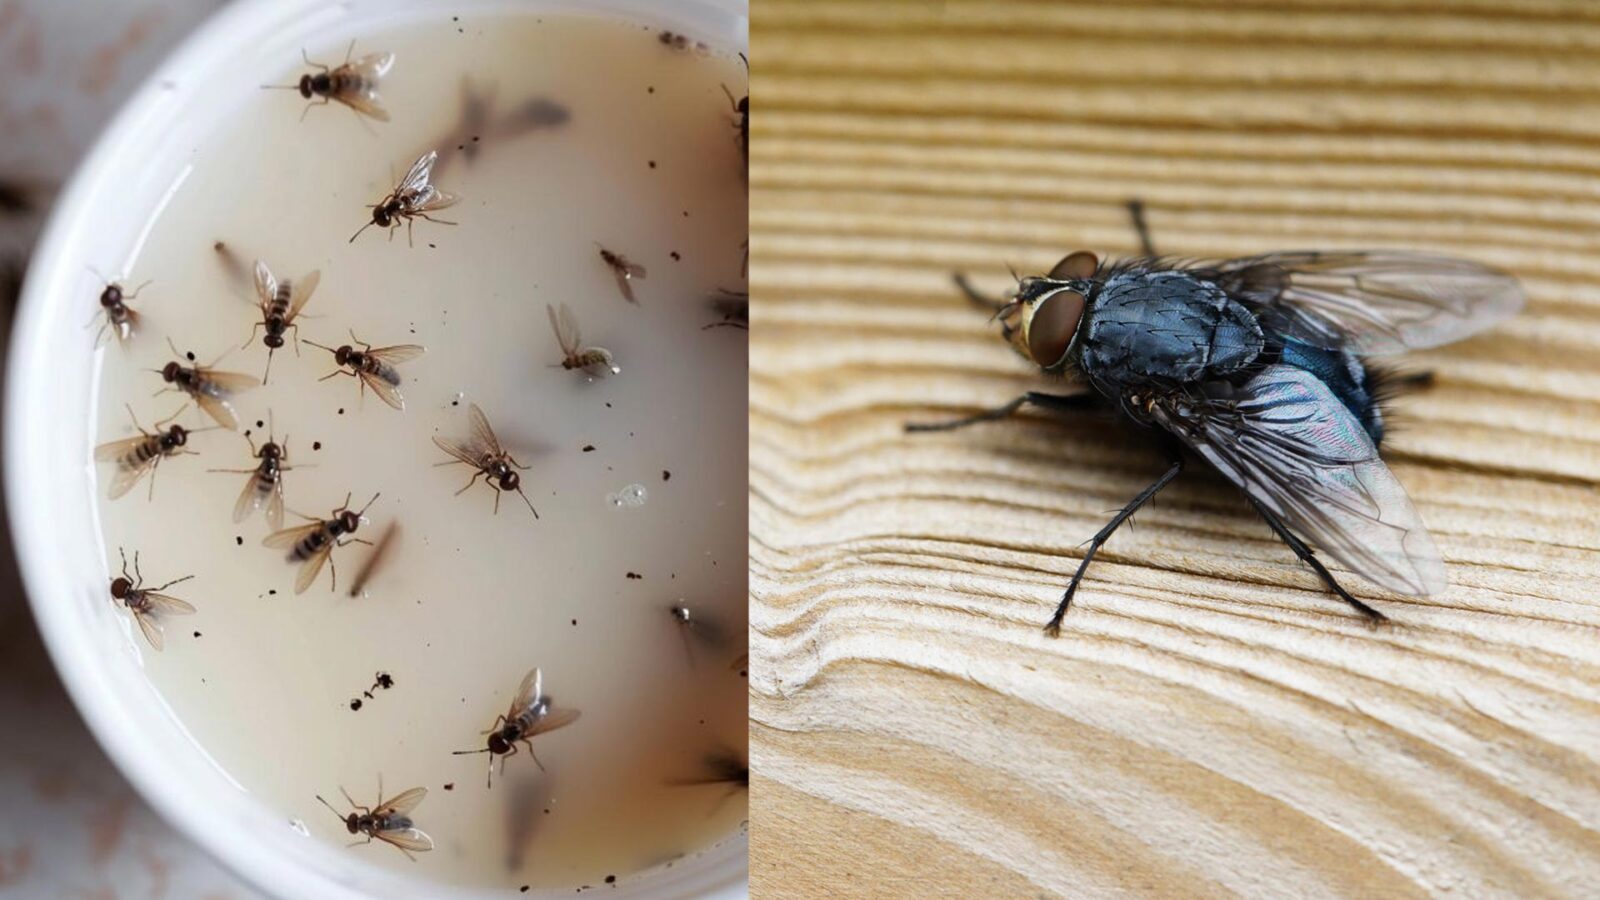 Μύγες κουνούπια και έντομα στην κουζίνα: Φτιάξτε εντομοαπωθητικό μείγμα για να τα εξαφανίσεις